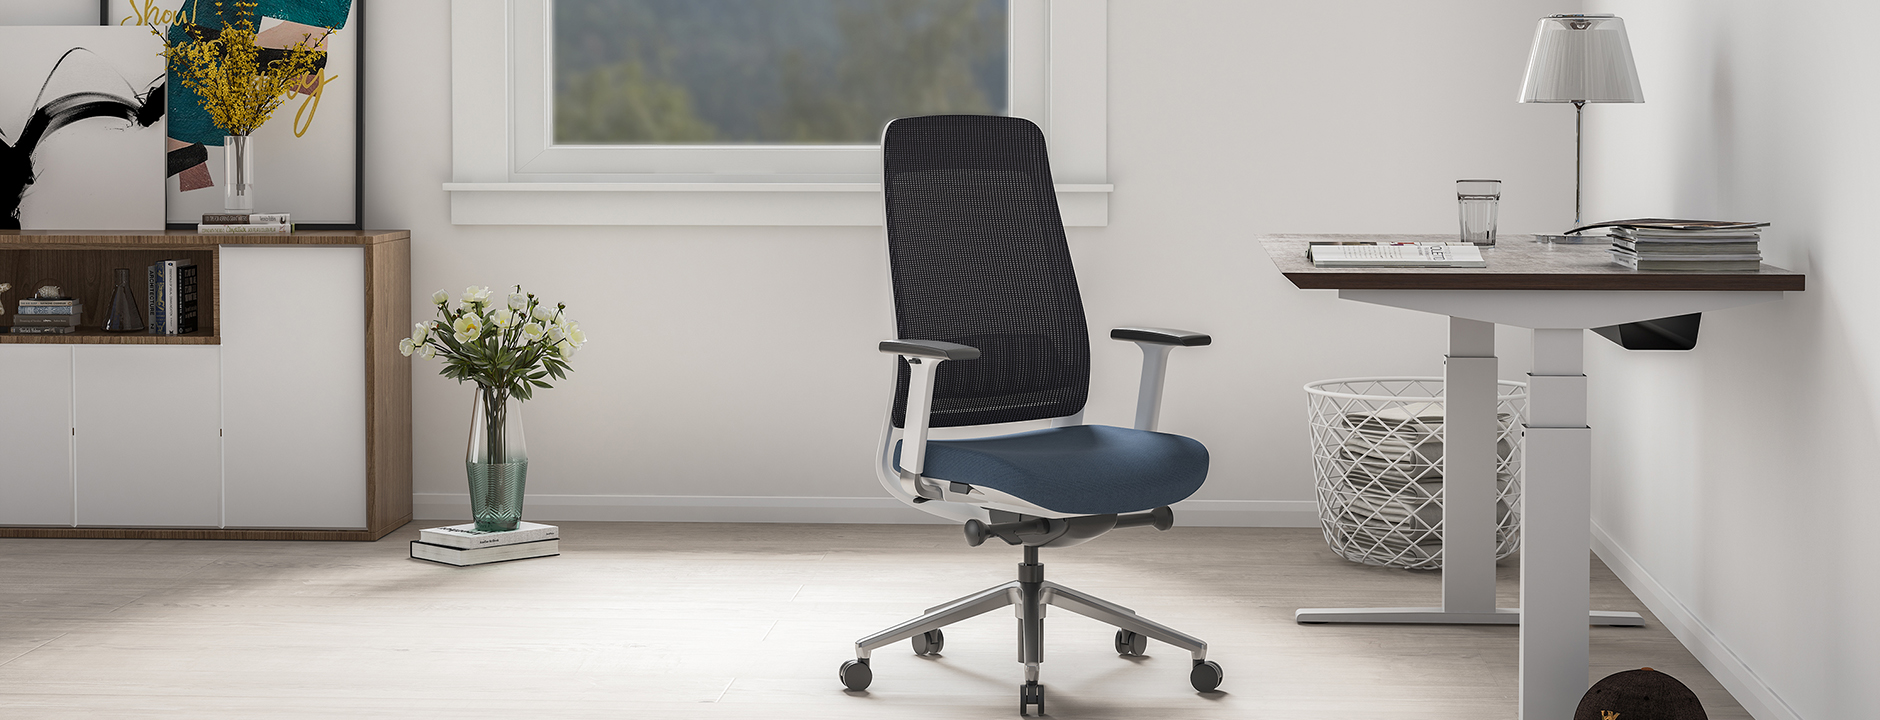 Как правильно выбрать офисное кресло для своих нужд: руководство